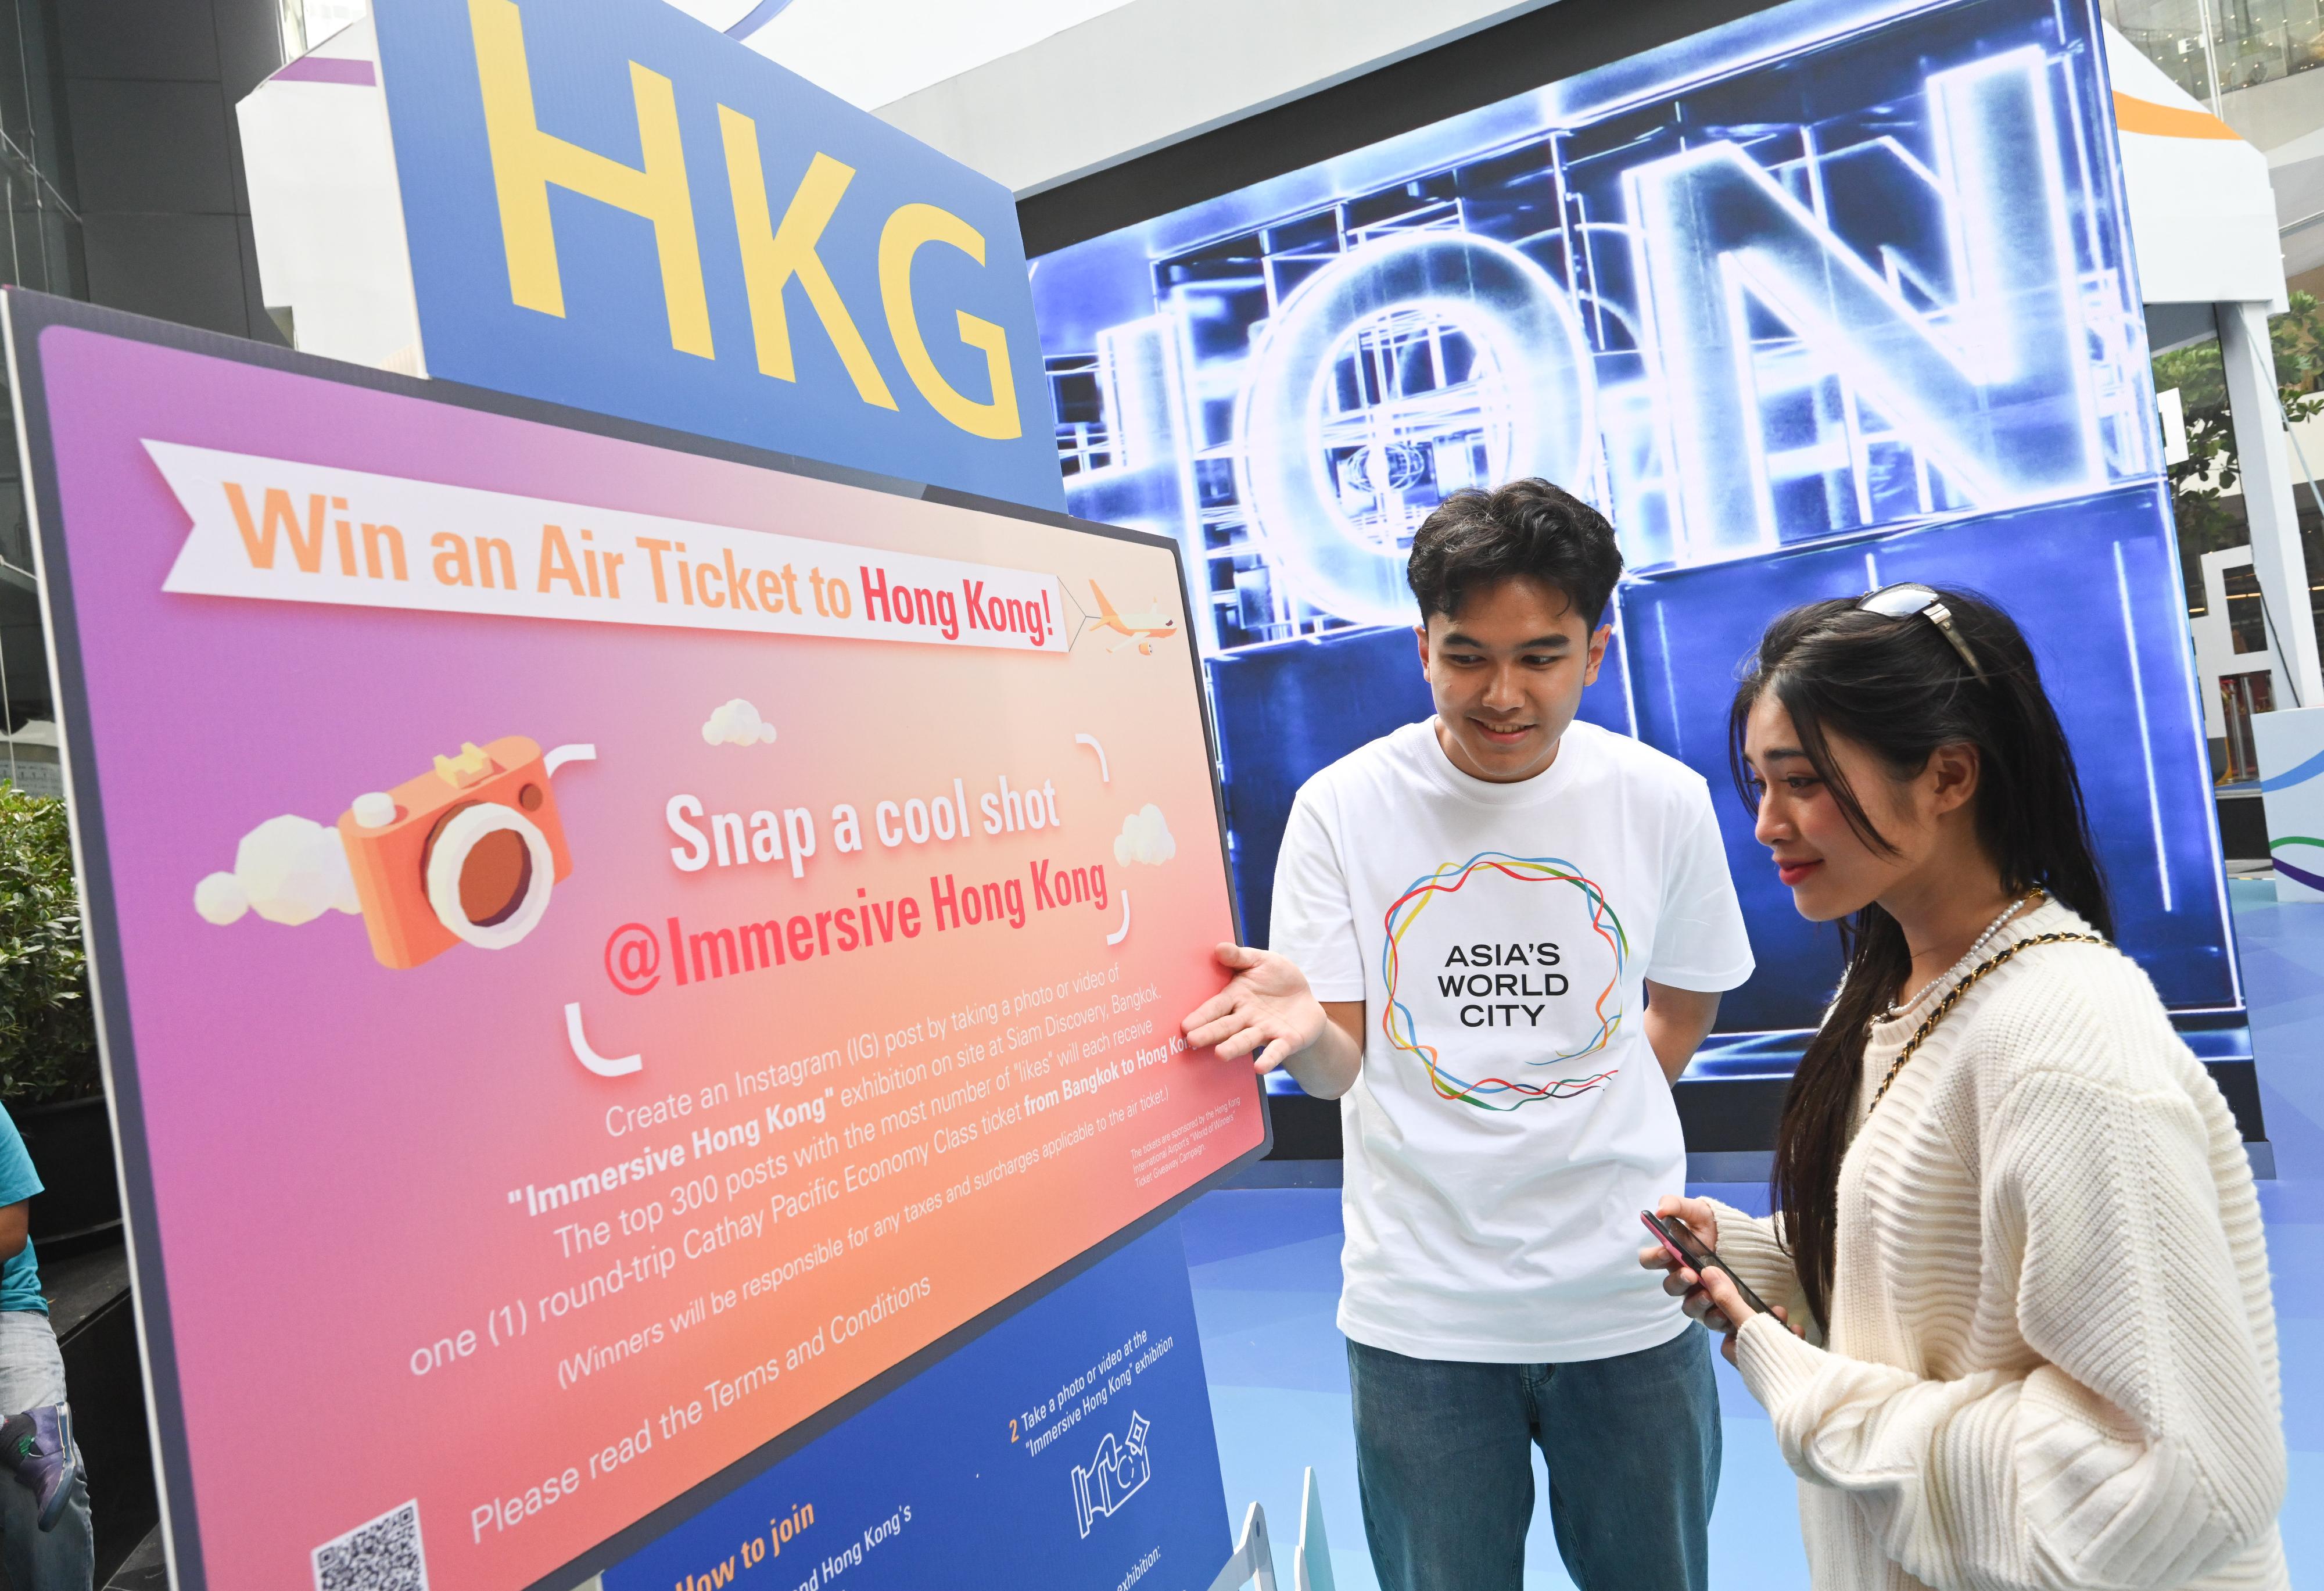 「香港─沉浸式之旅」巡回展览今日（十月二十日）在泰国曼谷展开，以艺术科技展示香港独有的实力、优势和机遇，是特区政府在东南亚国家联盟国家举办的推广活动之一。展览期间同时举行「快拍留影」互动游戏，奖品为曼谷至香港的来回机票，由香港国际机场「飞遇世界钜赏」活动赞助。图为参观者查阅游戏详情。